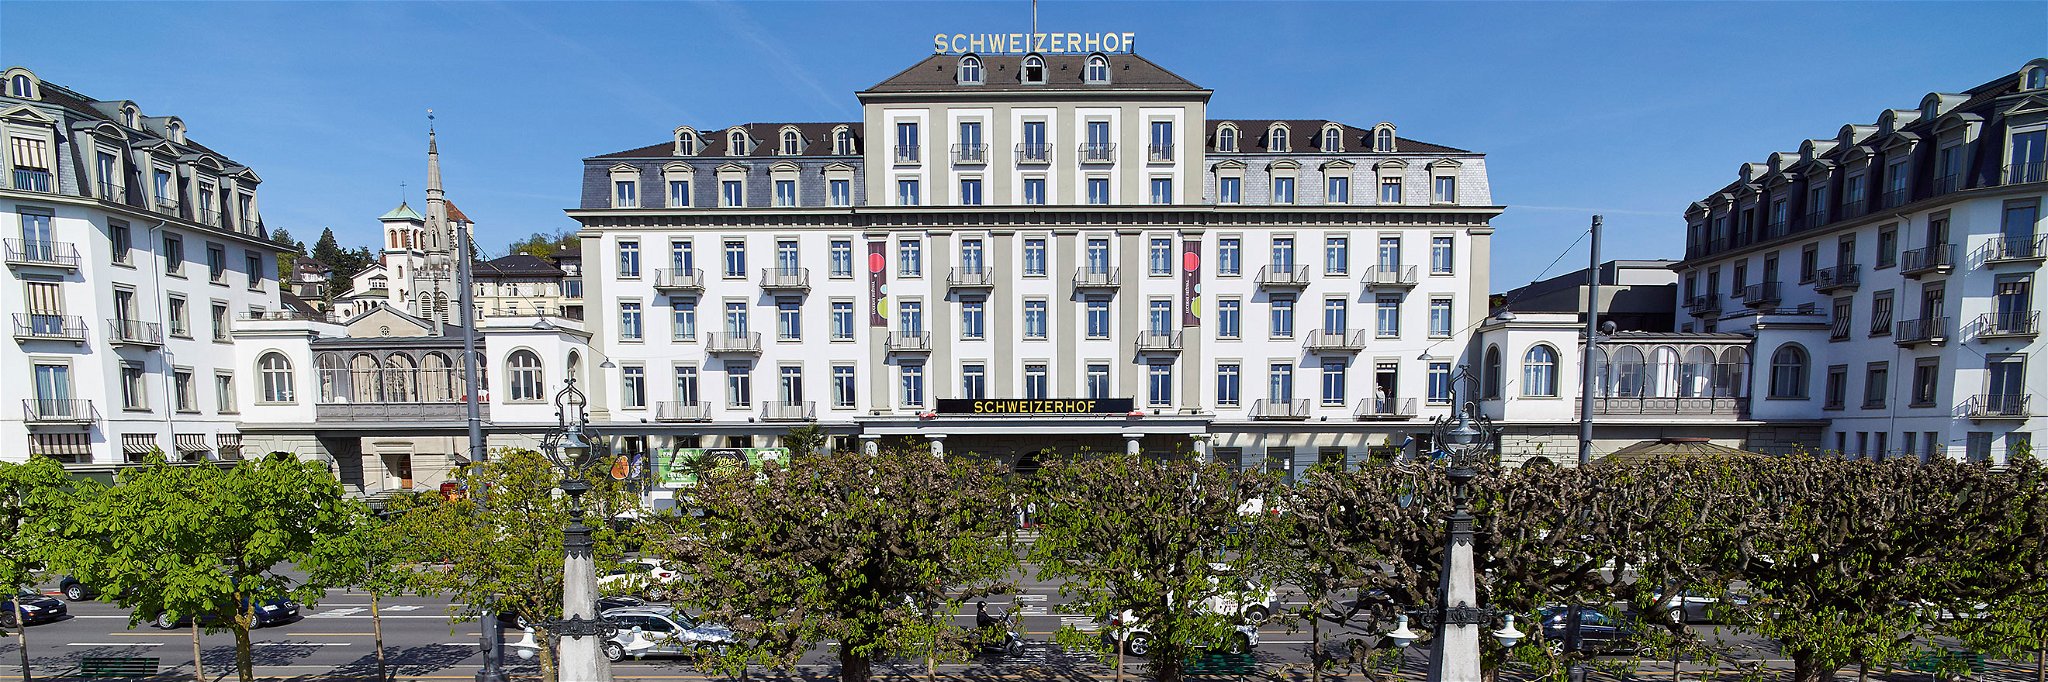 Die Weinverkostung findet im geschichtsträchtige Zeugheersaal des Hotels Schweizerhof statt. 